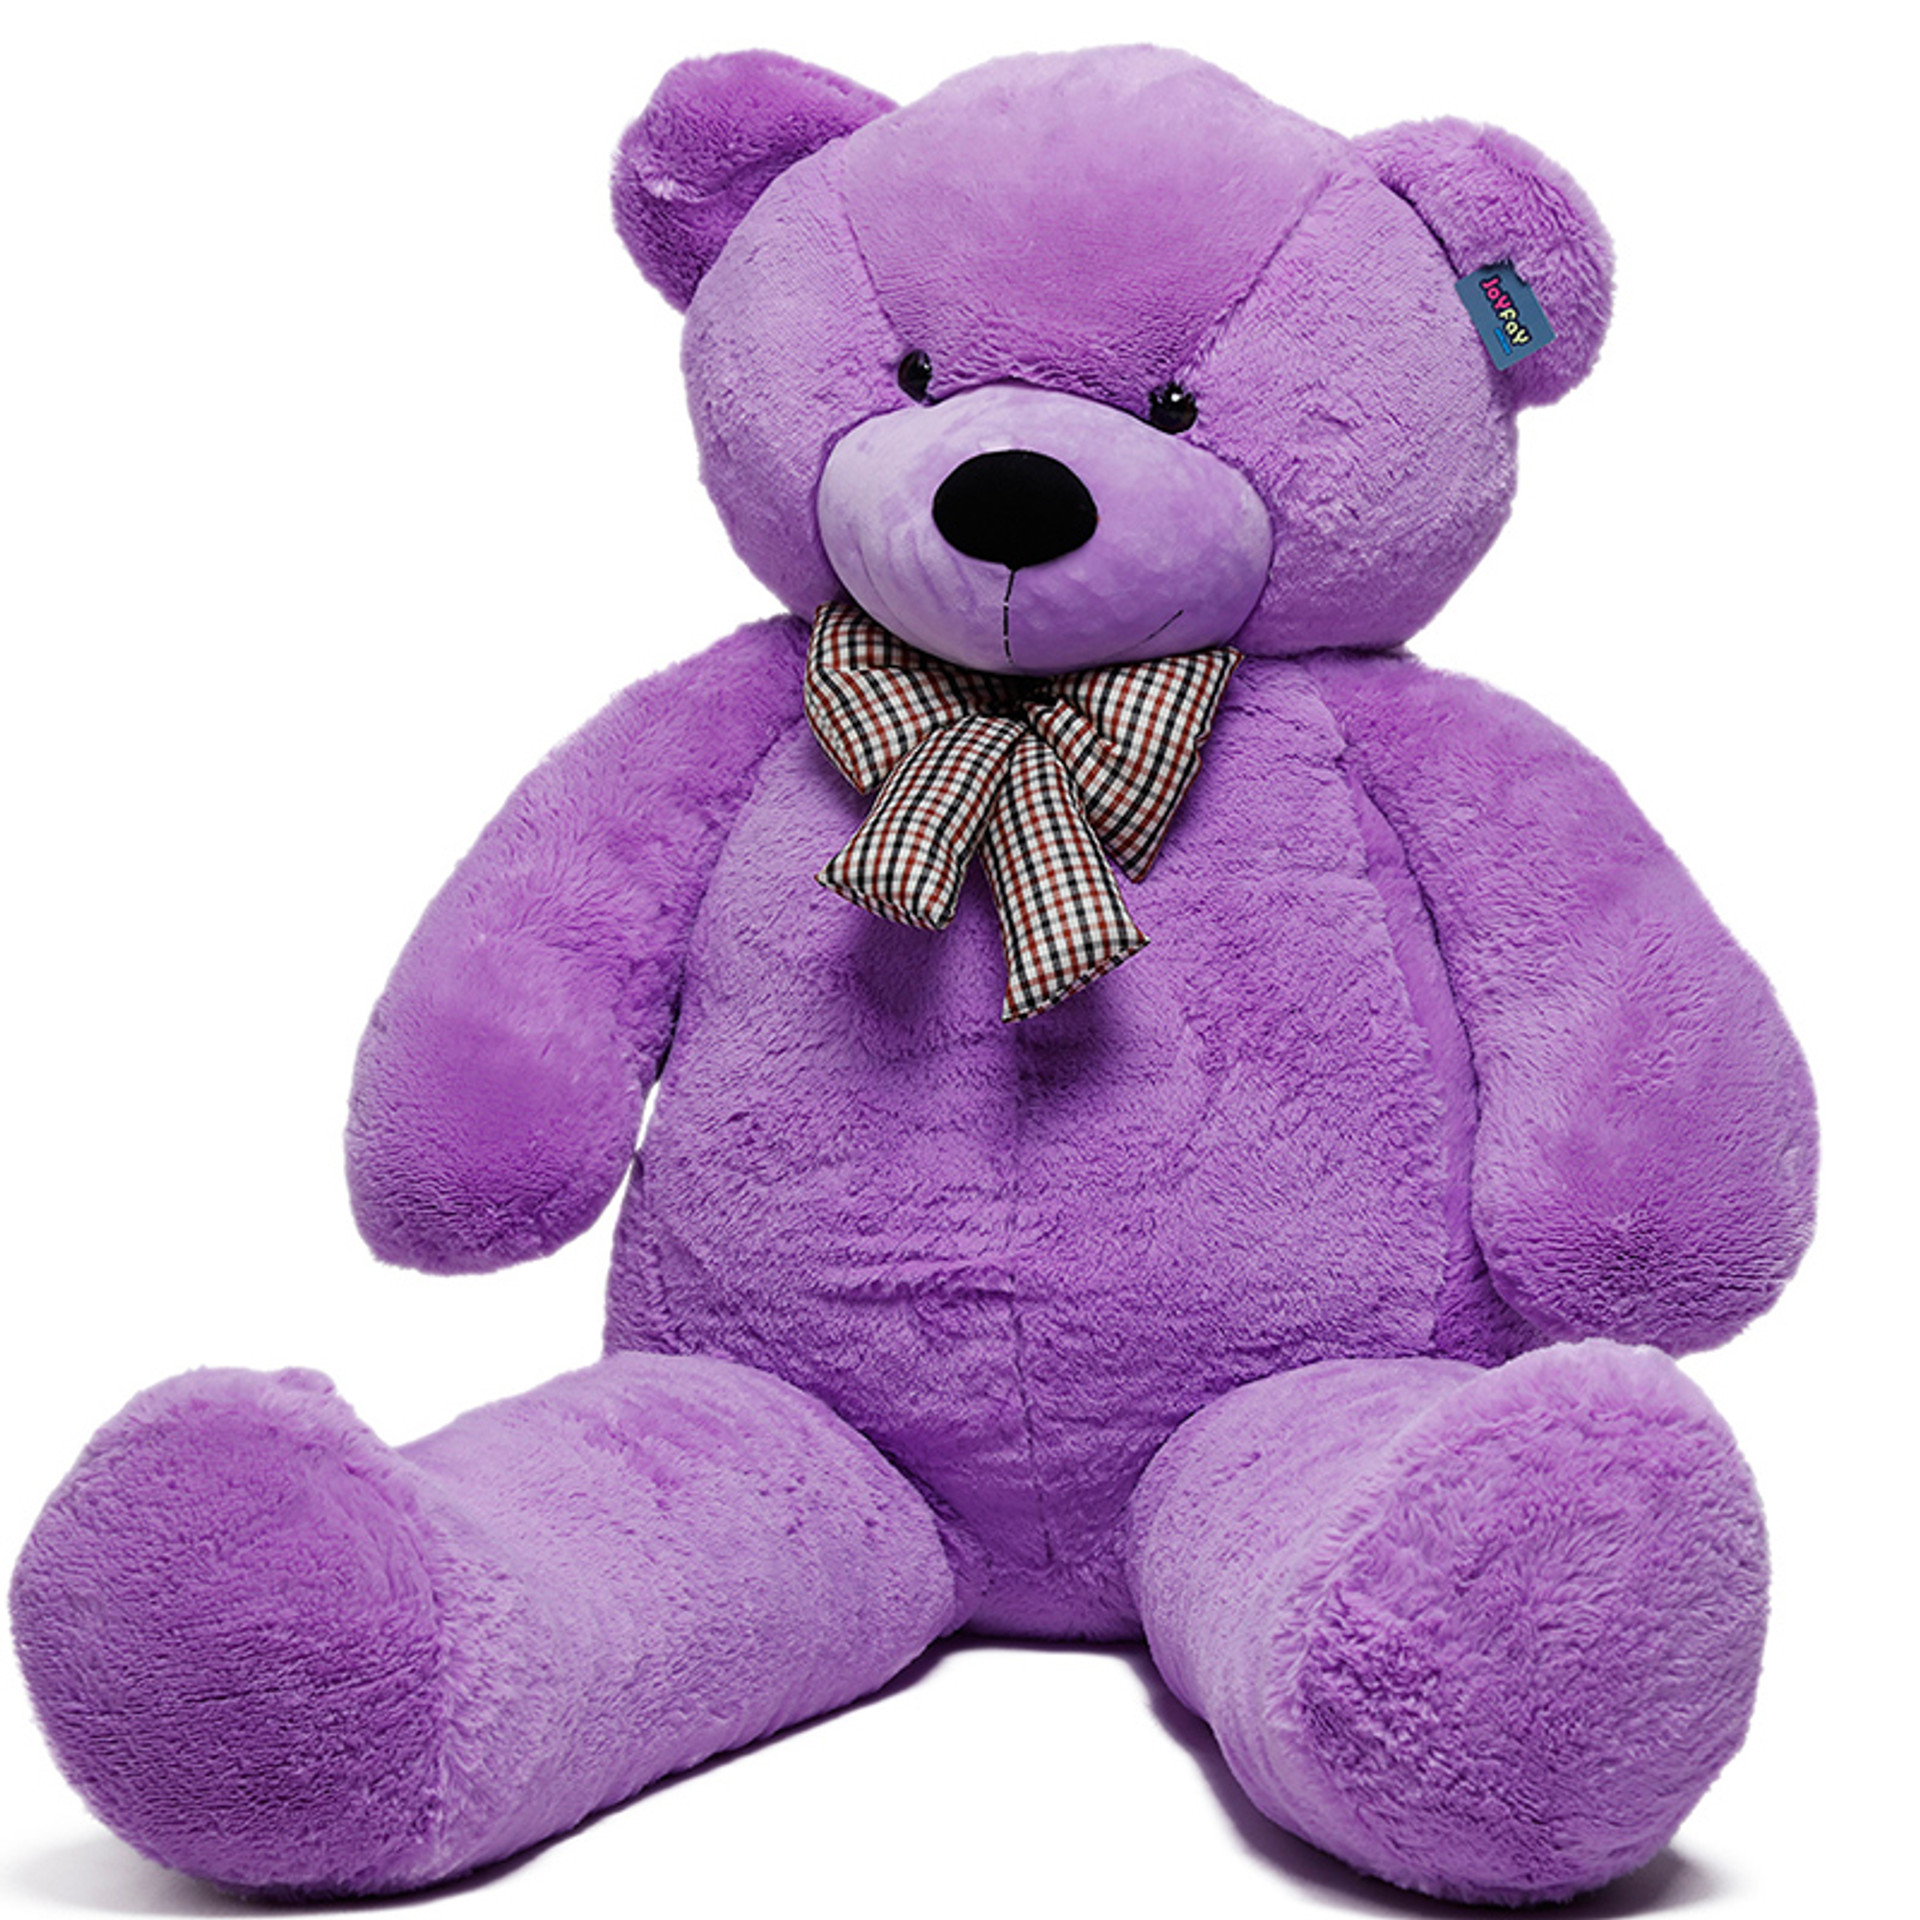 78“ Giant Purple Teddy Bear, 6.5 ft Full Stuffed Toy